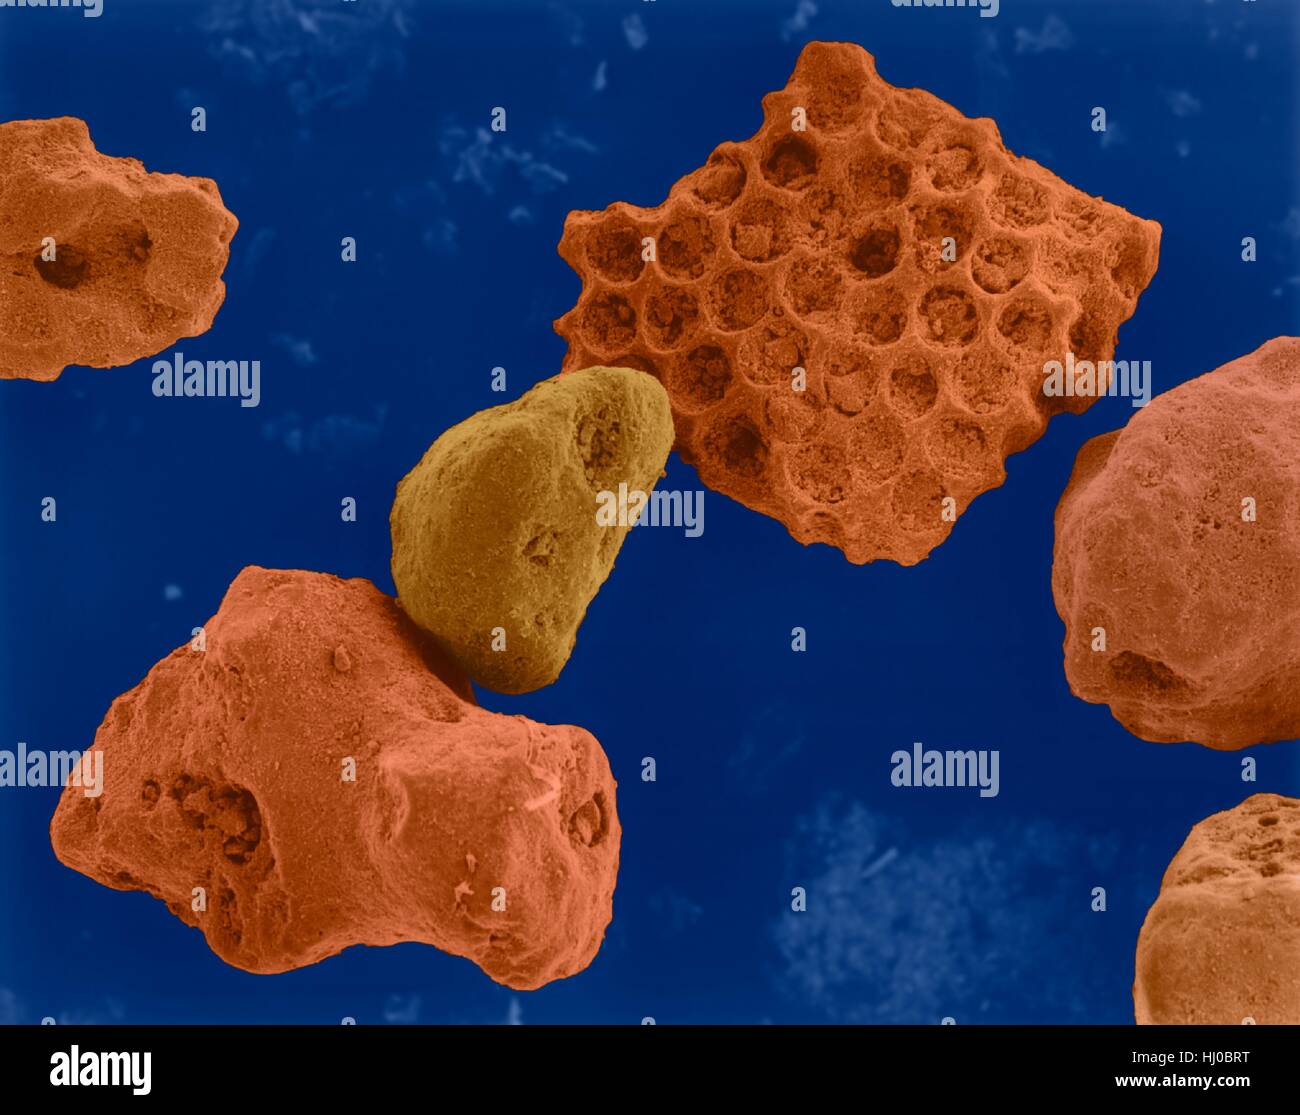 Farbige scanning Electron Schliffbild (SEM) von Korallensand (Kailua, Hawaii). Strandsand enthält Gestein Mineralien und Skelette, die aus lebenden Organismen (z.B. Korallen) abgeleitet worden zu sein. Sandkörner aus Koralle hergestellt haben feine Löcher und sind aufgrund von Abnutzung durch die Oberfläche Wirkung glatter. Vergrößerung: X43 wenn kürzeste Achse bei 25 Millimetern gedruckt. Stockfoto